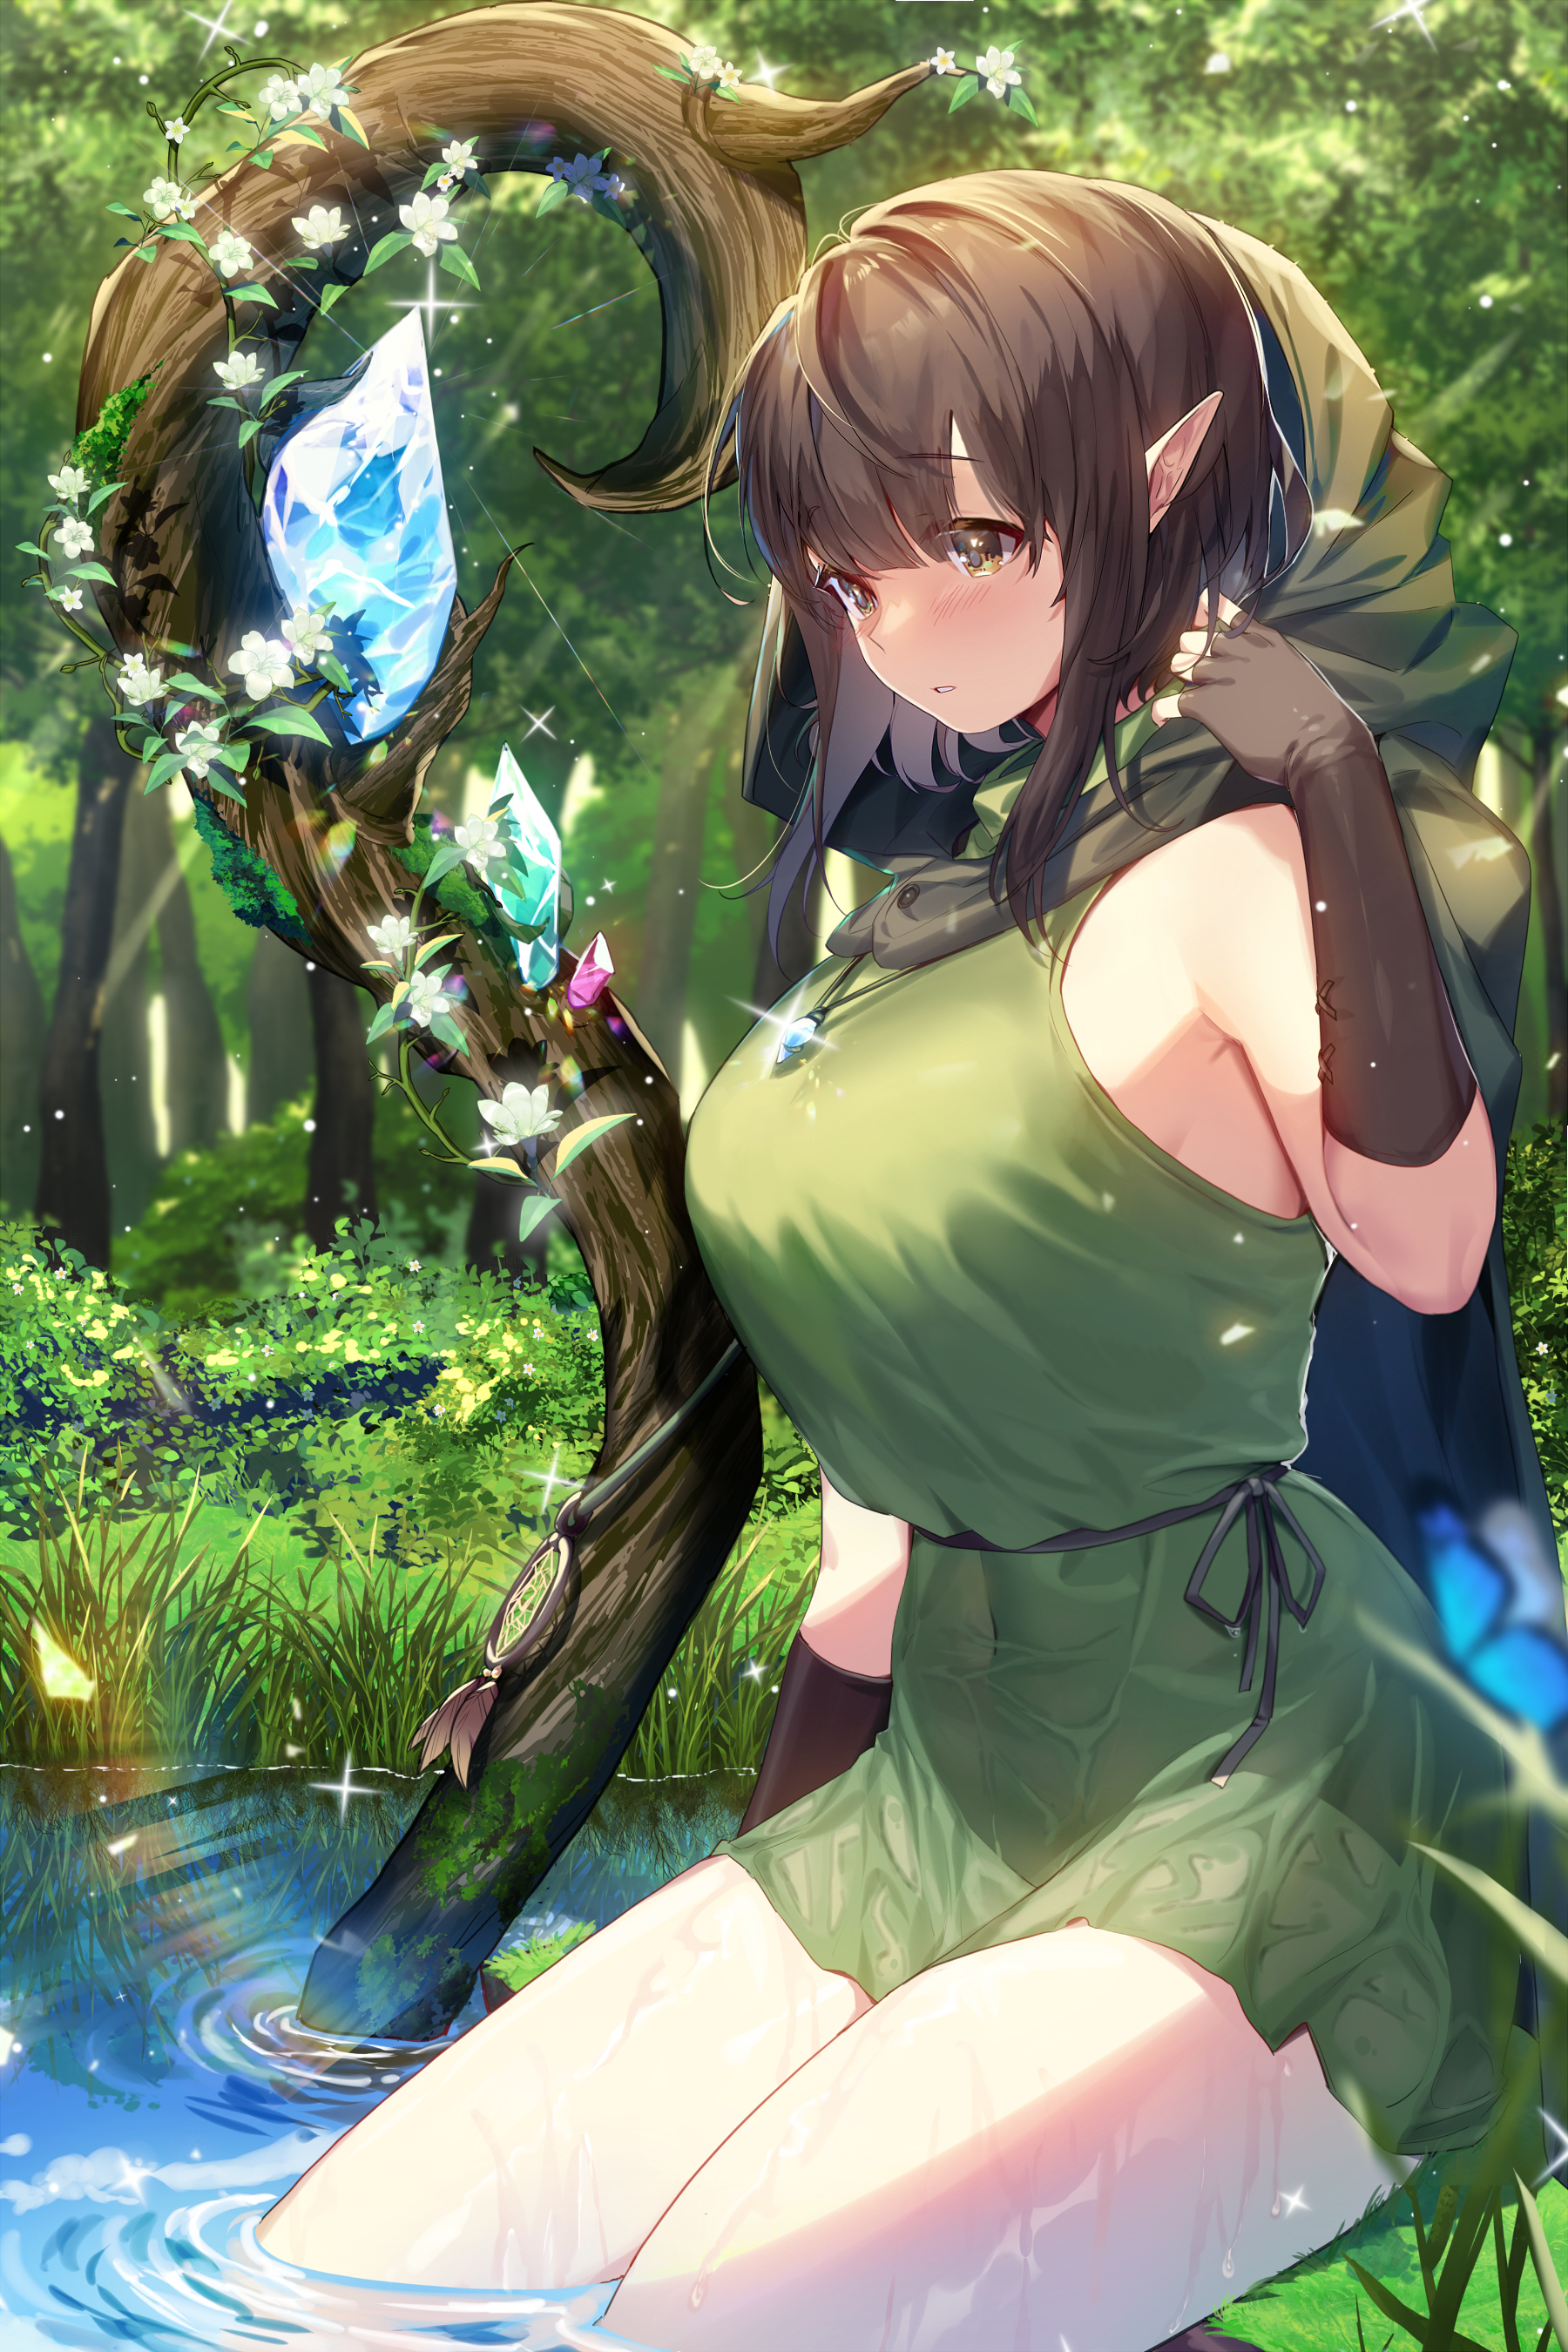 Anime Anime Girls Original Characters Elves Fantasy Girl Hoods Dress Forest Blushing 2D Artwork Draw 1800x2700